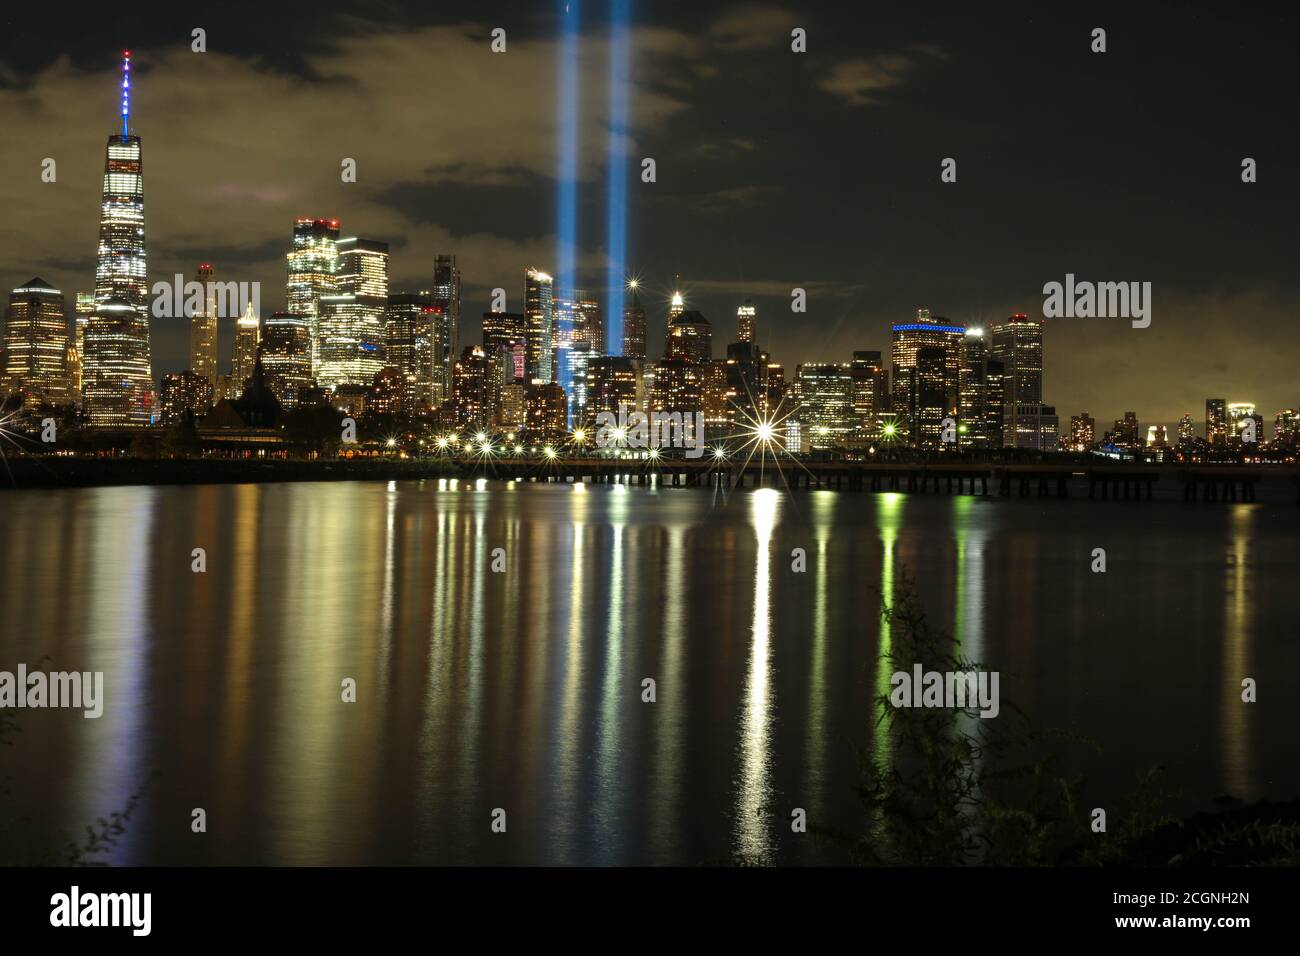 Photos taken on 911 WTC memorial Stock Photo